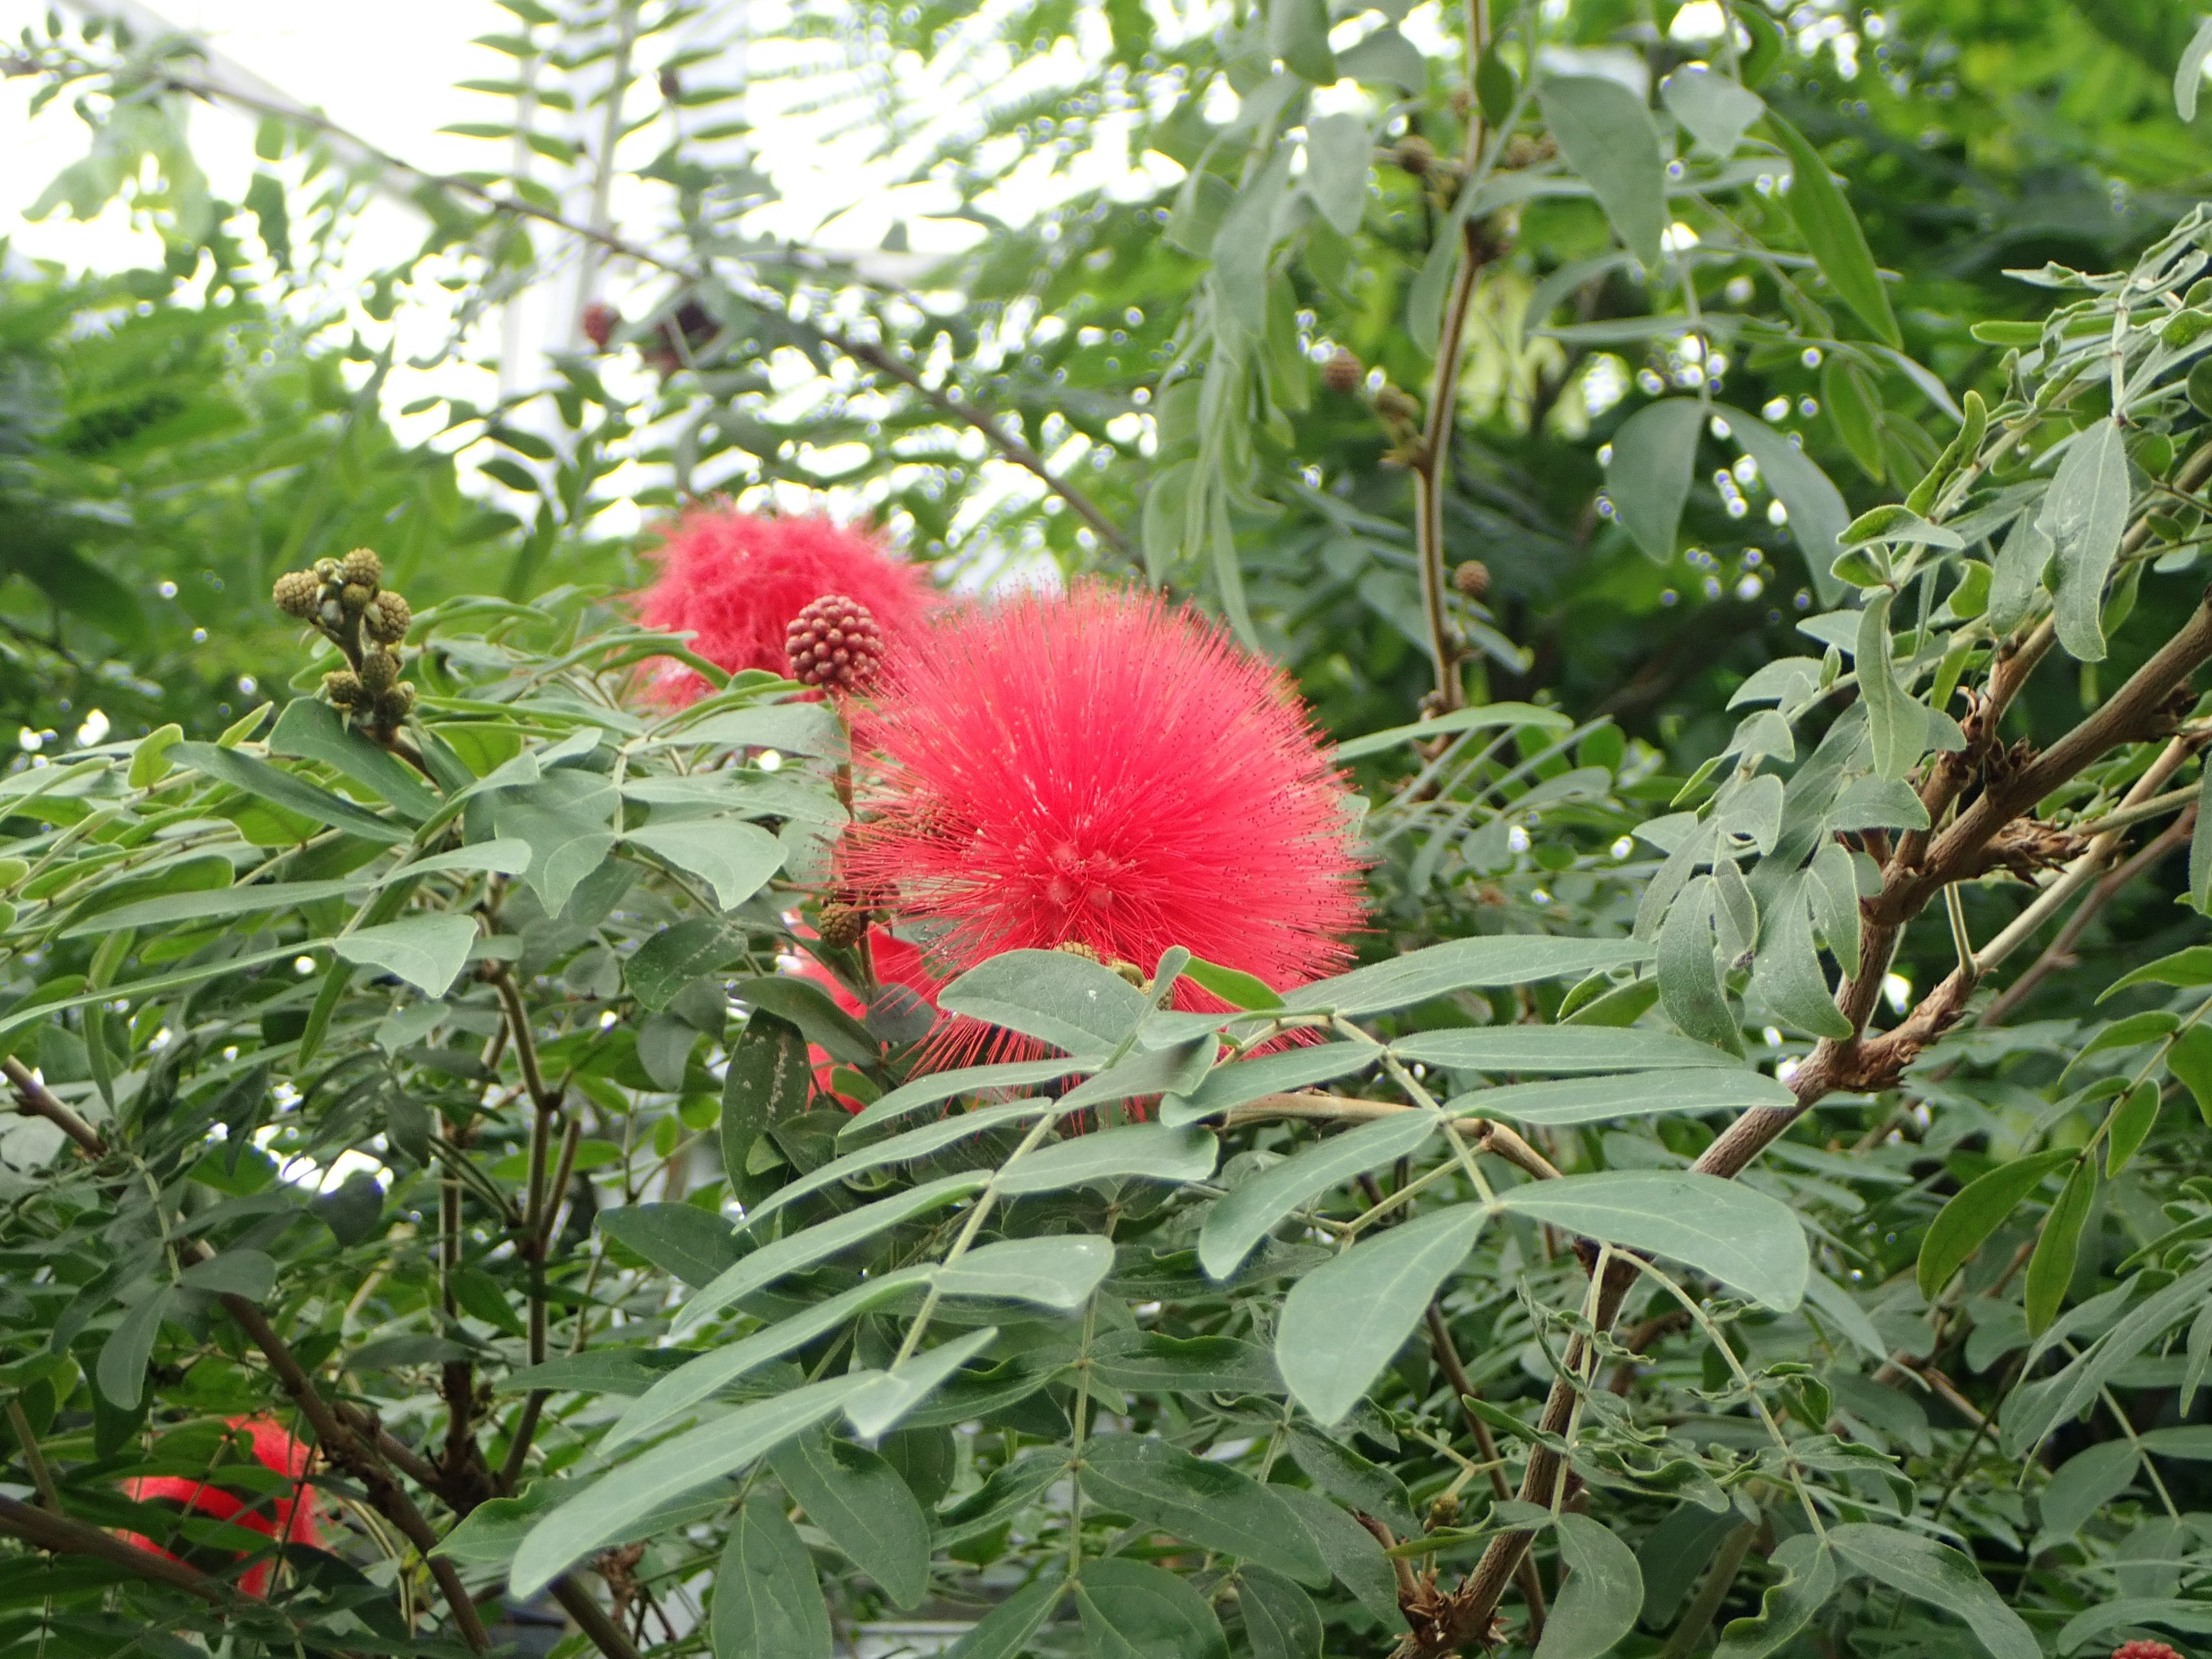 広島市植物公園 大温室内でカリアンドラが ポンポンのような丸い花を咲かせ始めました 南アメリカ原産のマメ科の熱帯花木で 日本のネムノキに近い種類です 当園には赤花と白花の株があります カリアンドラ 大温室 T Co Lzcaubhc7e Twitter